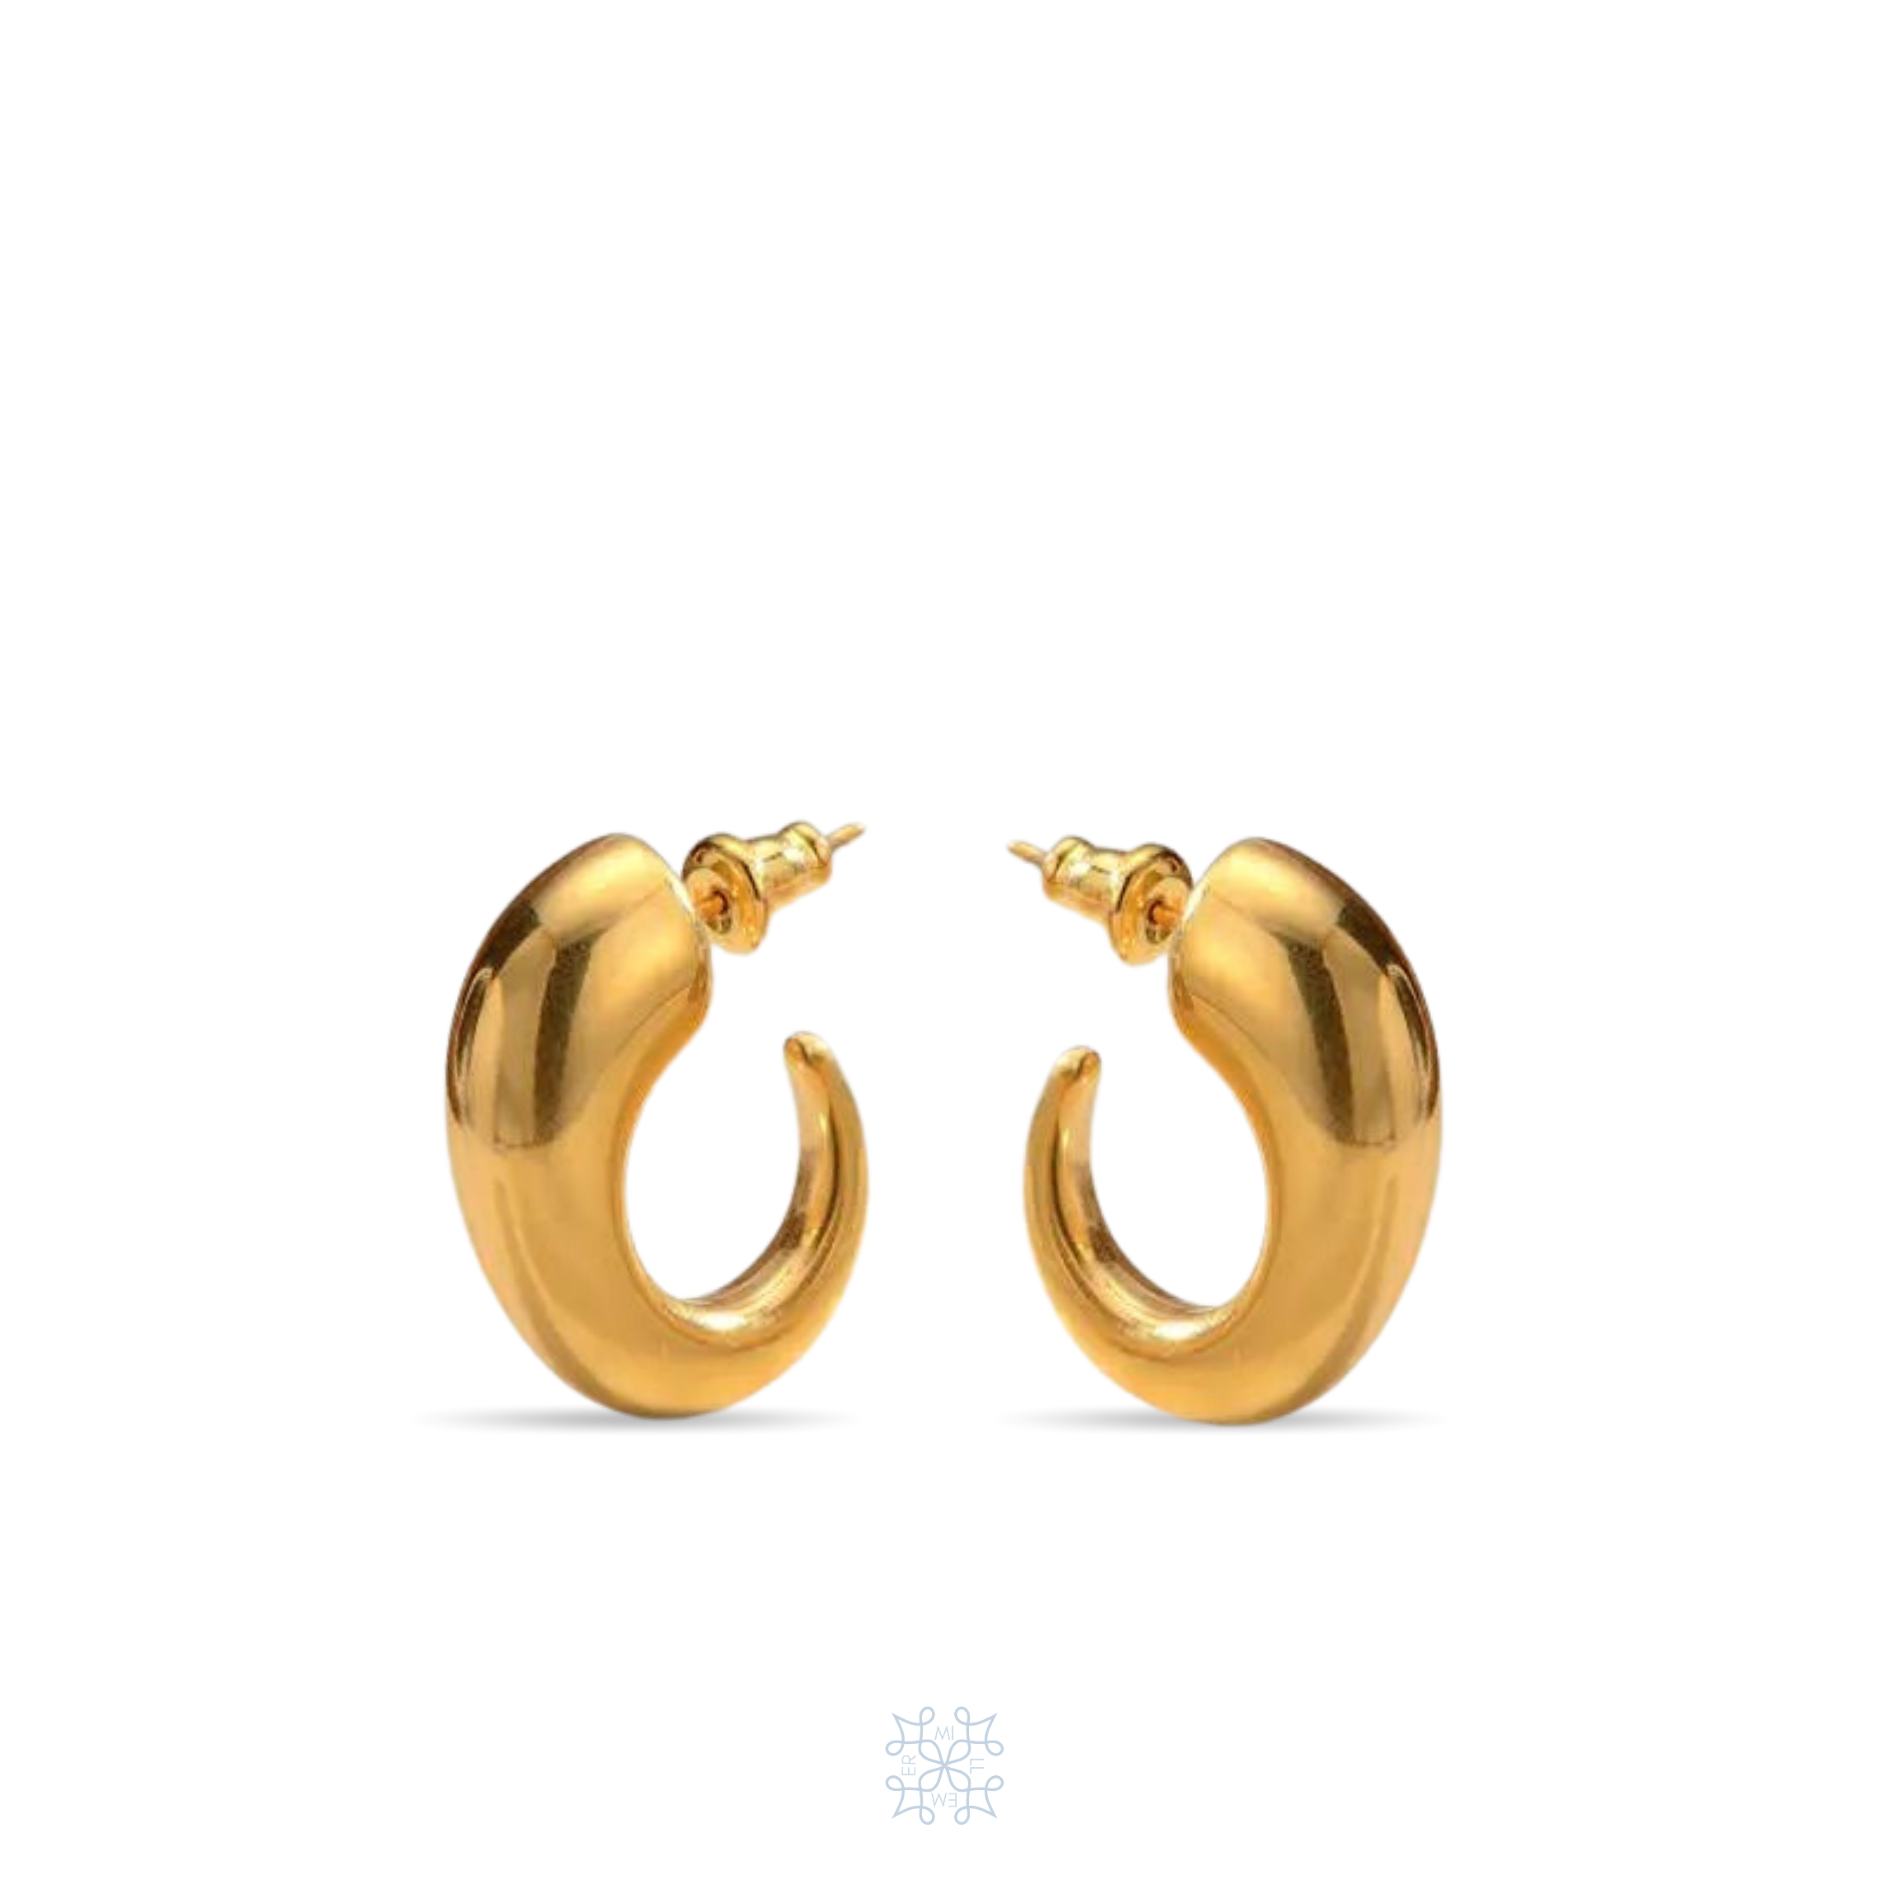 HORN shaped gold Earrings. Chunky horns shape hoop earrings.